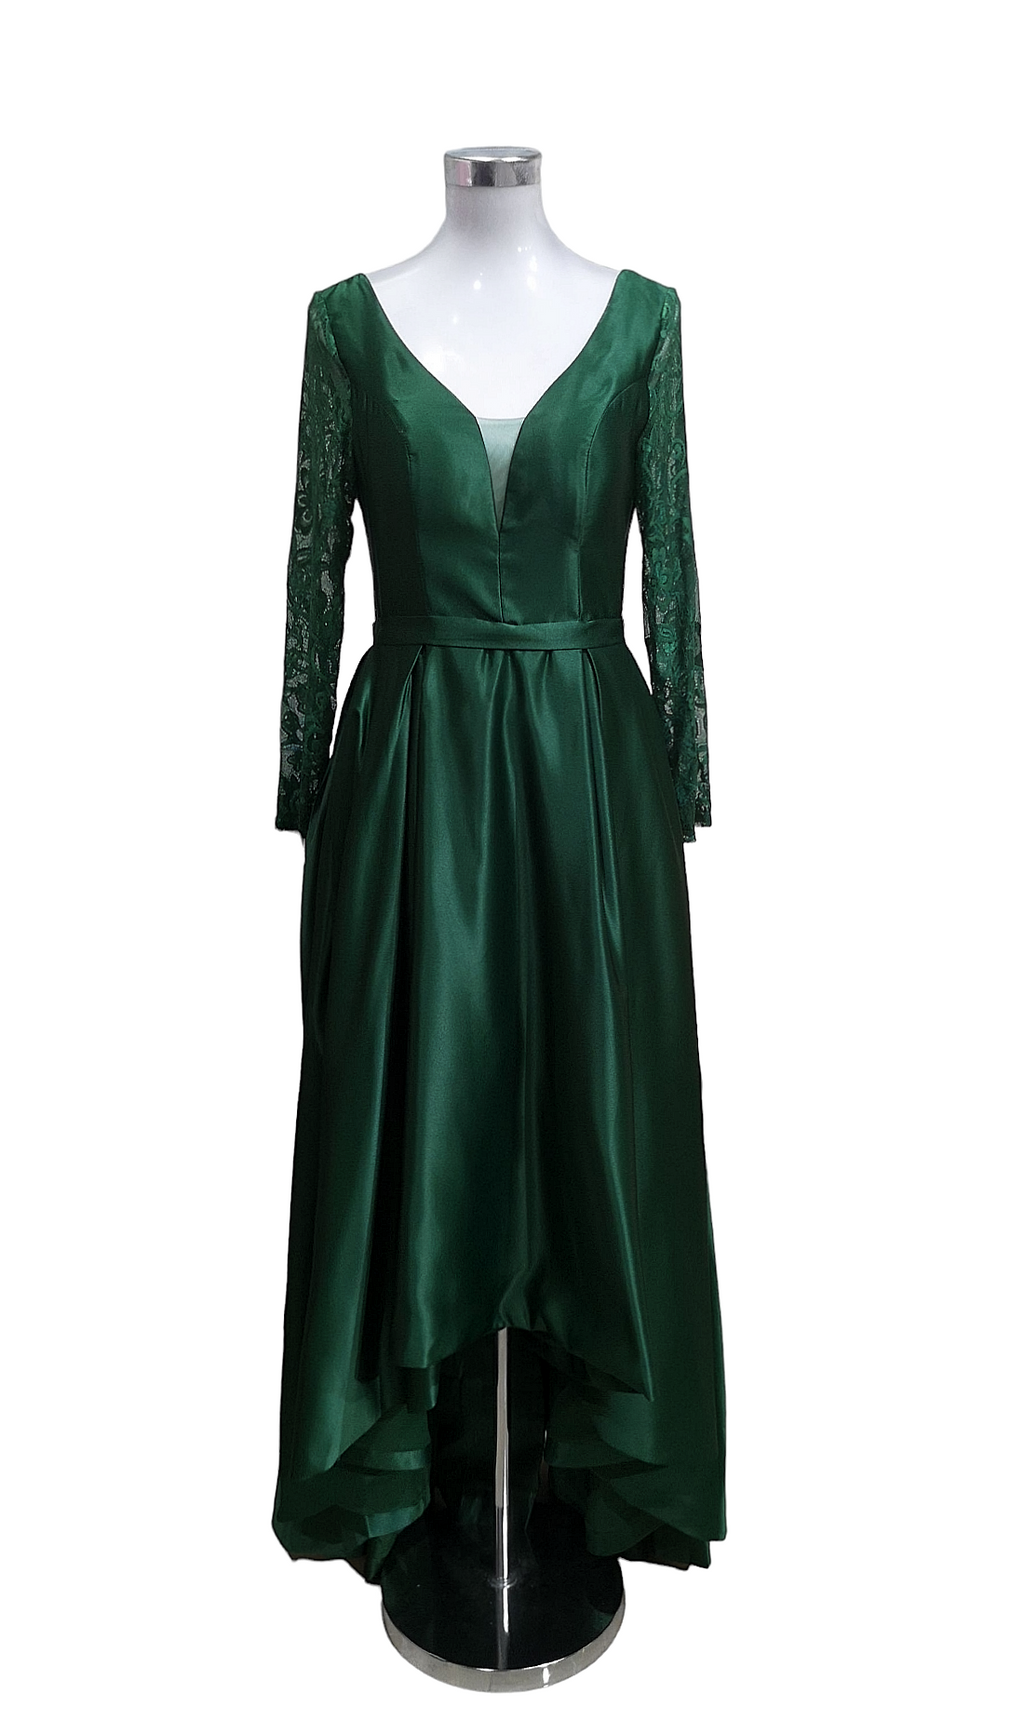 1831 - Emerald green long sleeve dress